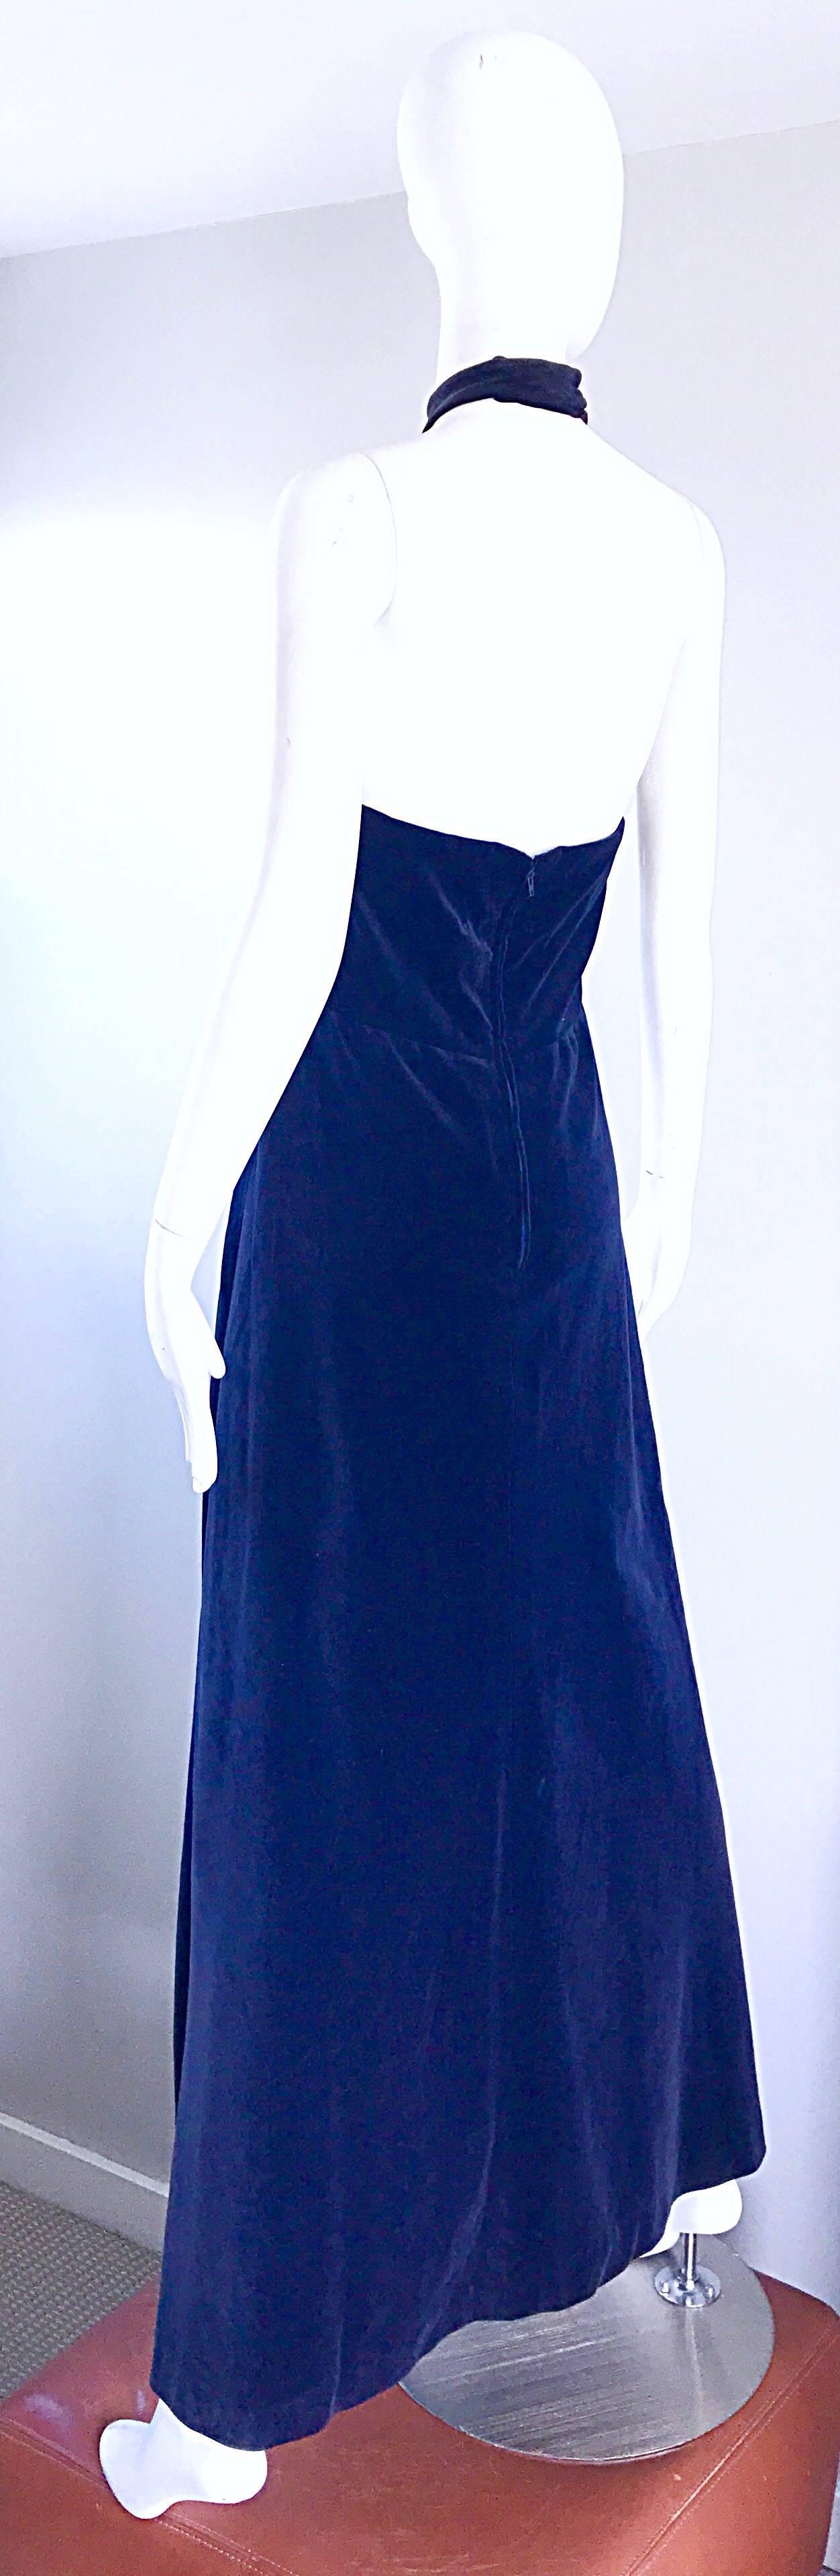 Yves Saint Laurent 1970s Vintage Navy Blue Velvet High Neck Halter Gown  1